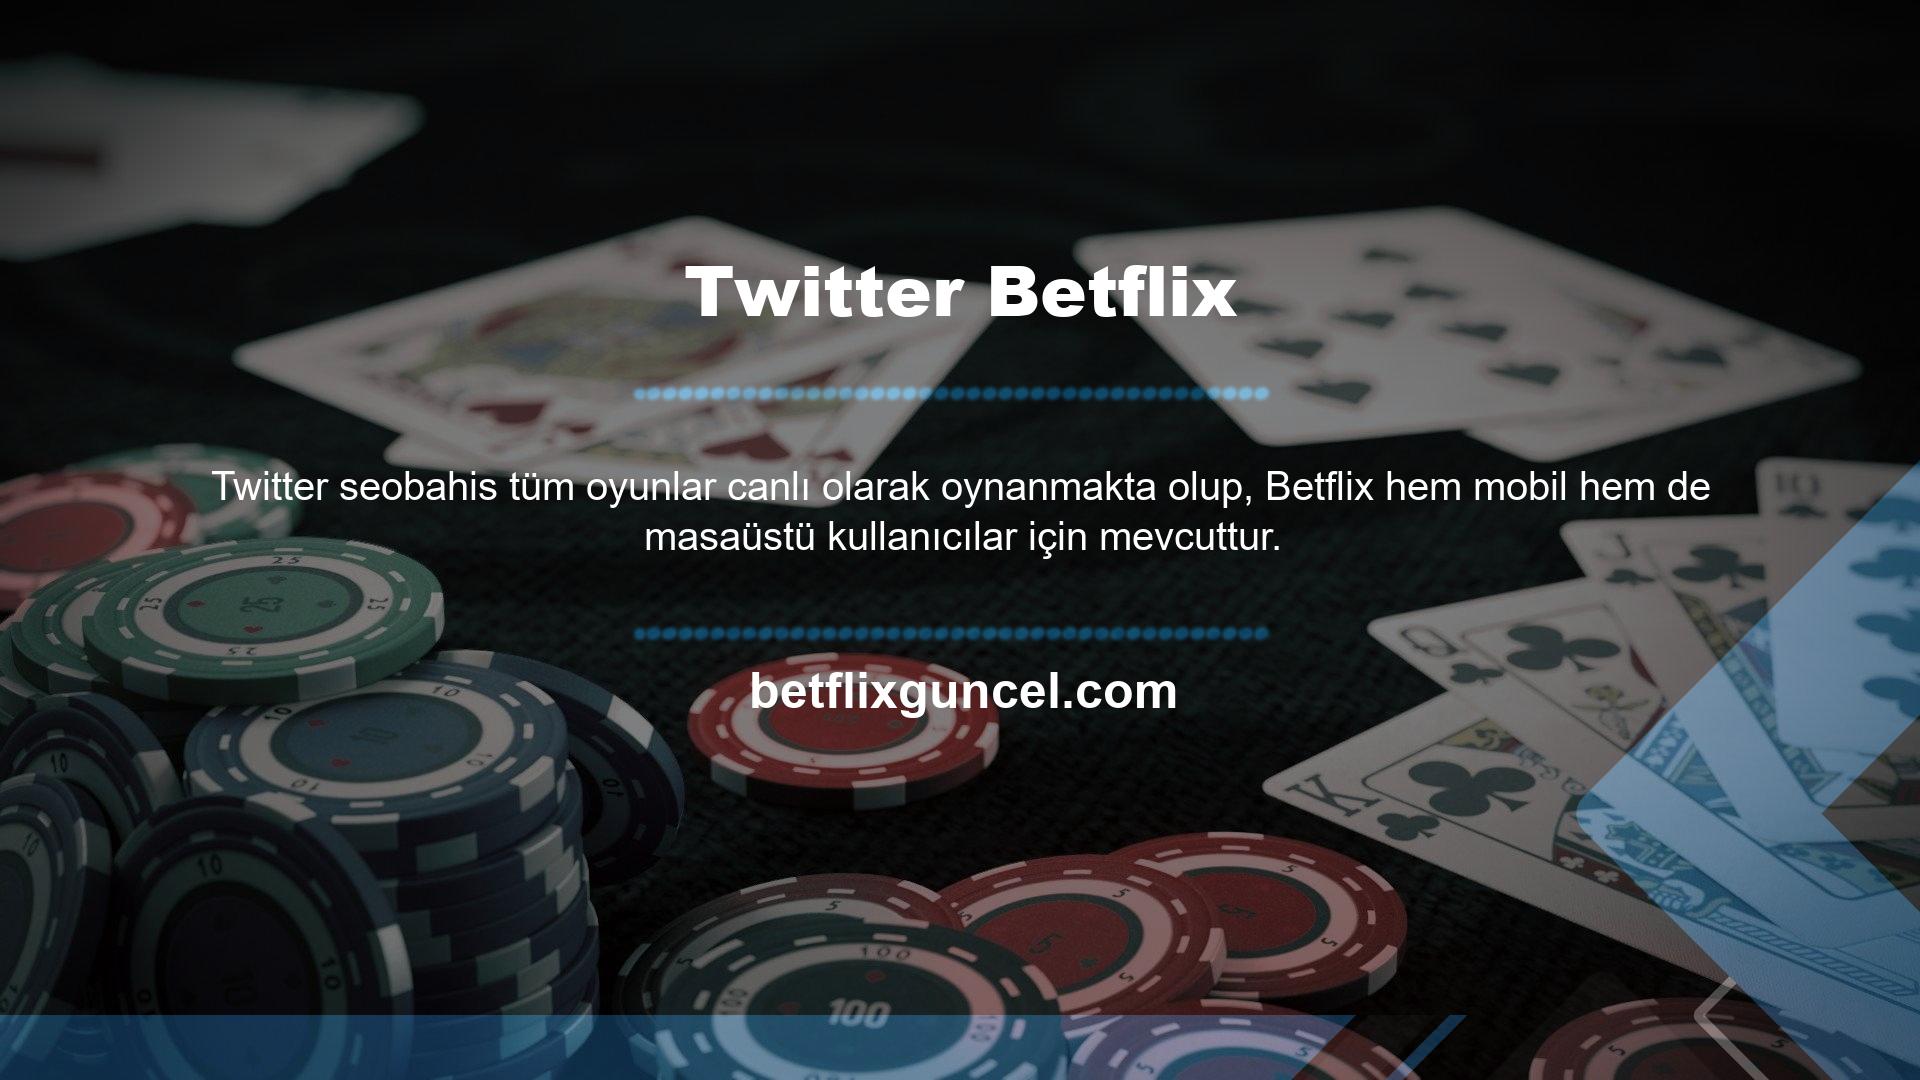 Betflix, belirli adresler dışında, oyun sektörü web sitelerinde erişilemeyen televizyon hizmetleri sunmaktadır